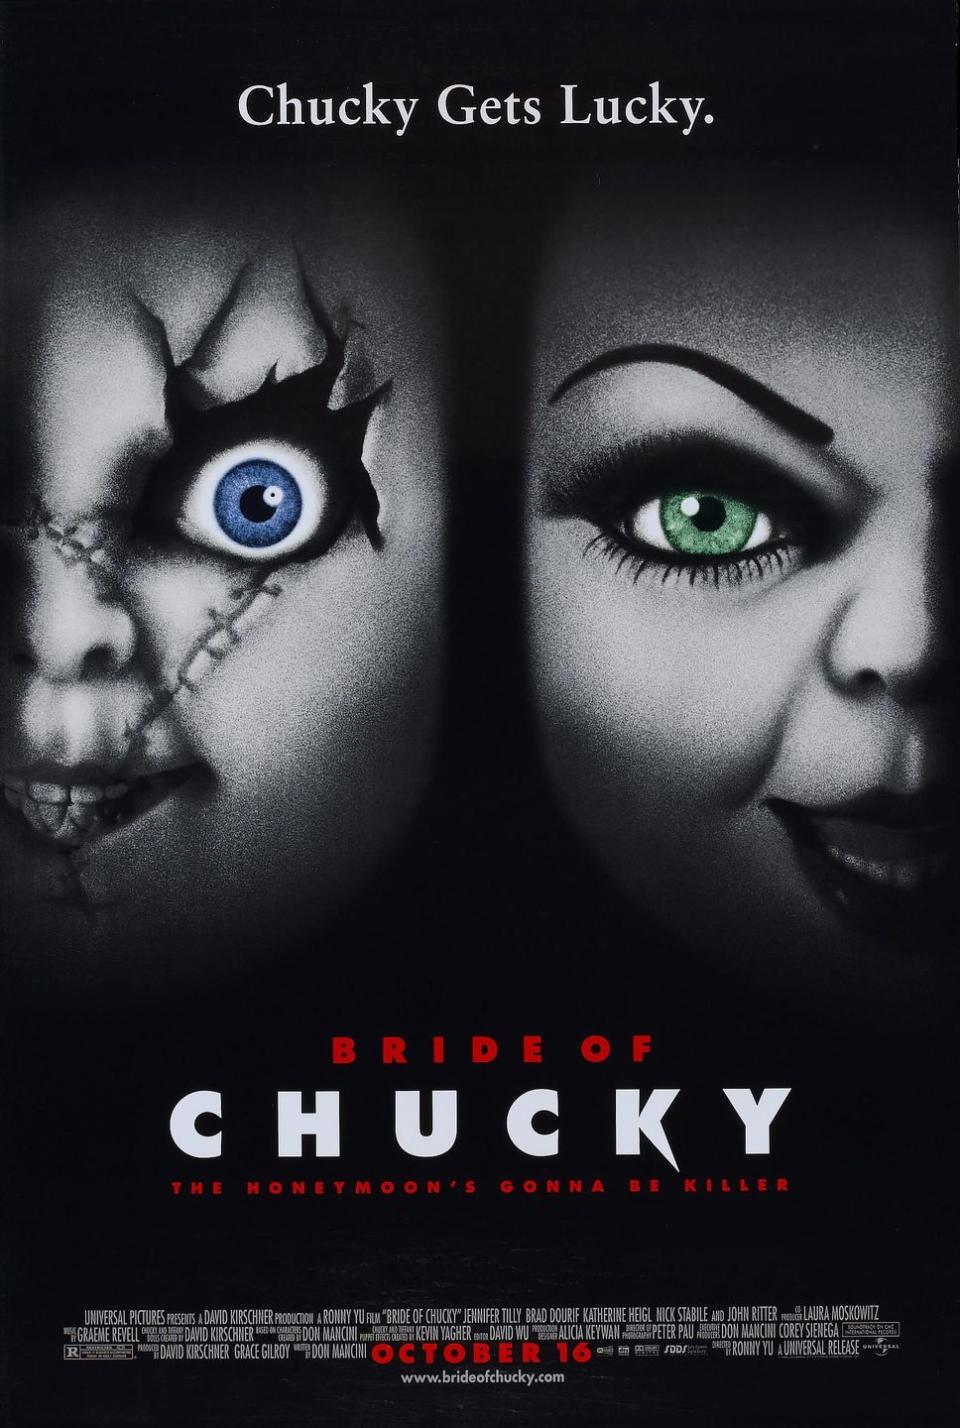 4) Bride of Chucky (1998)